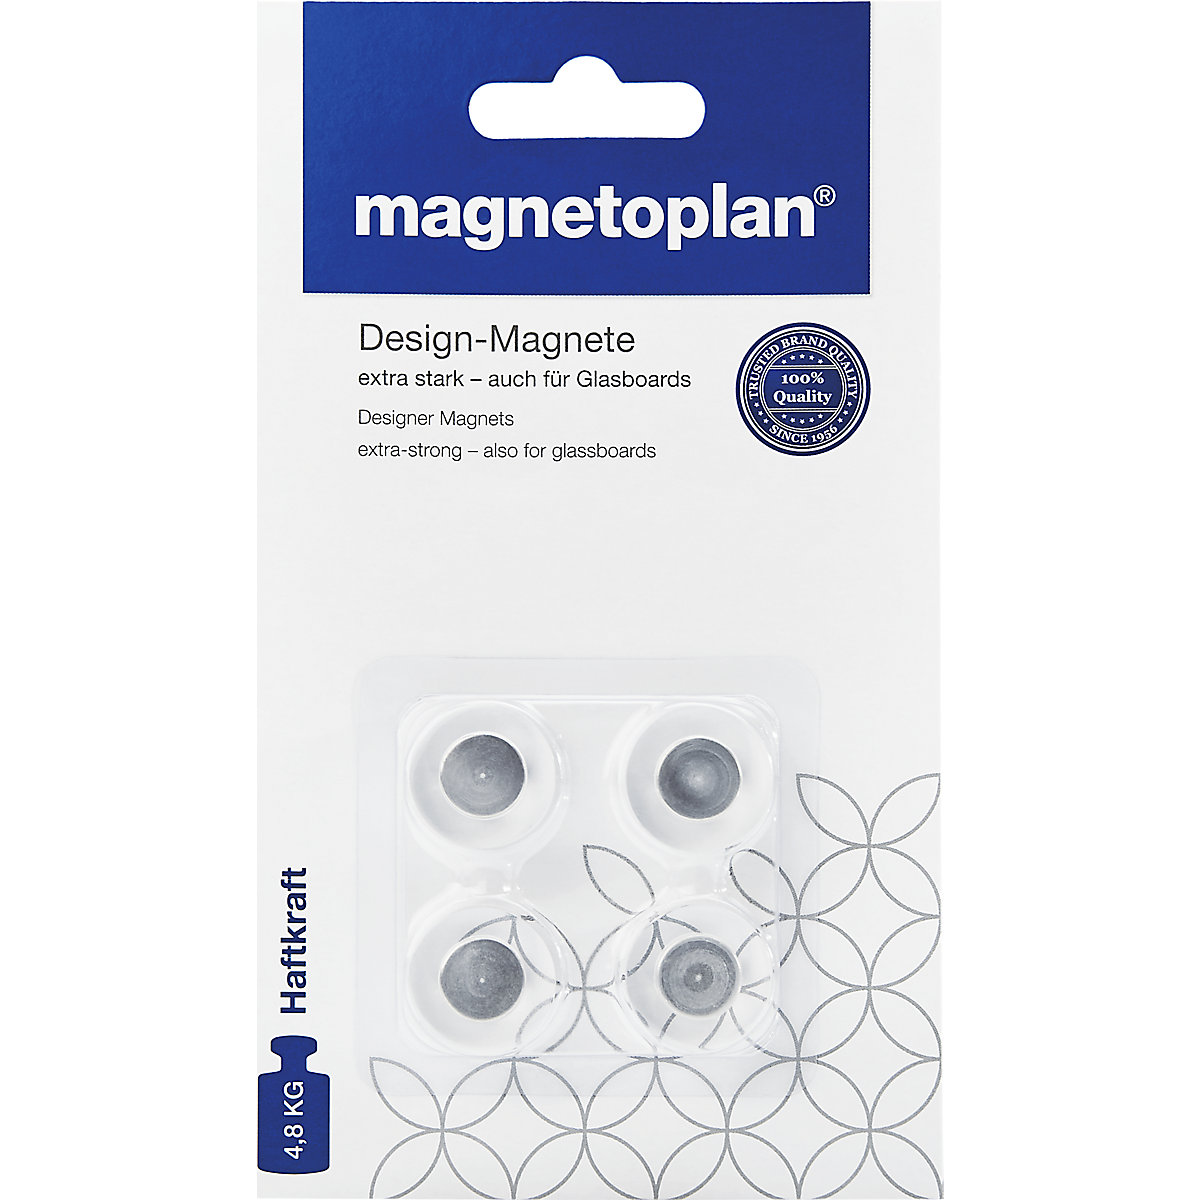 Dizajnerski magnet - magnetoplan